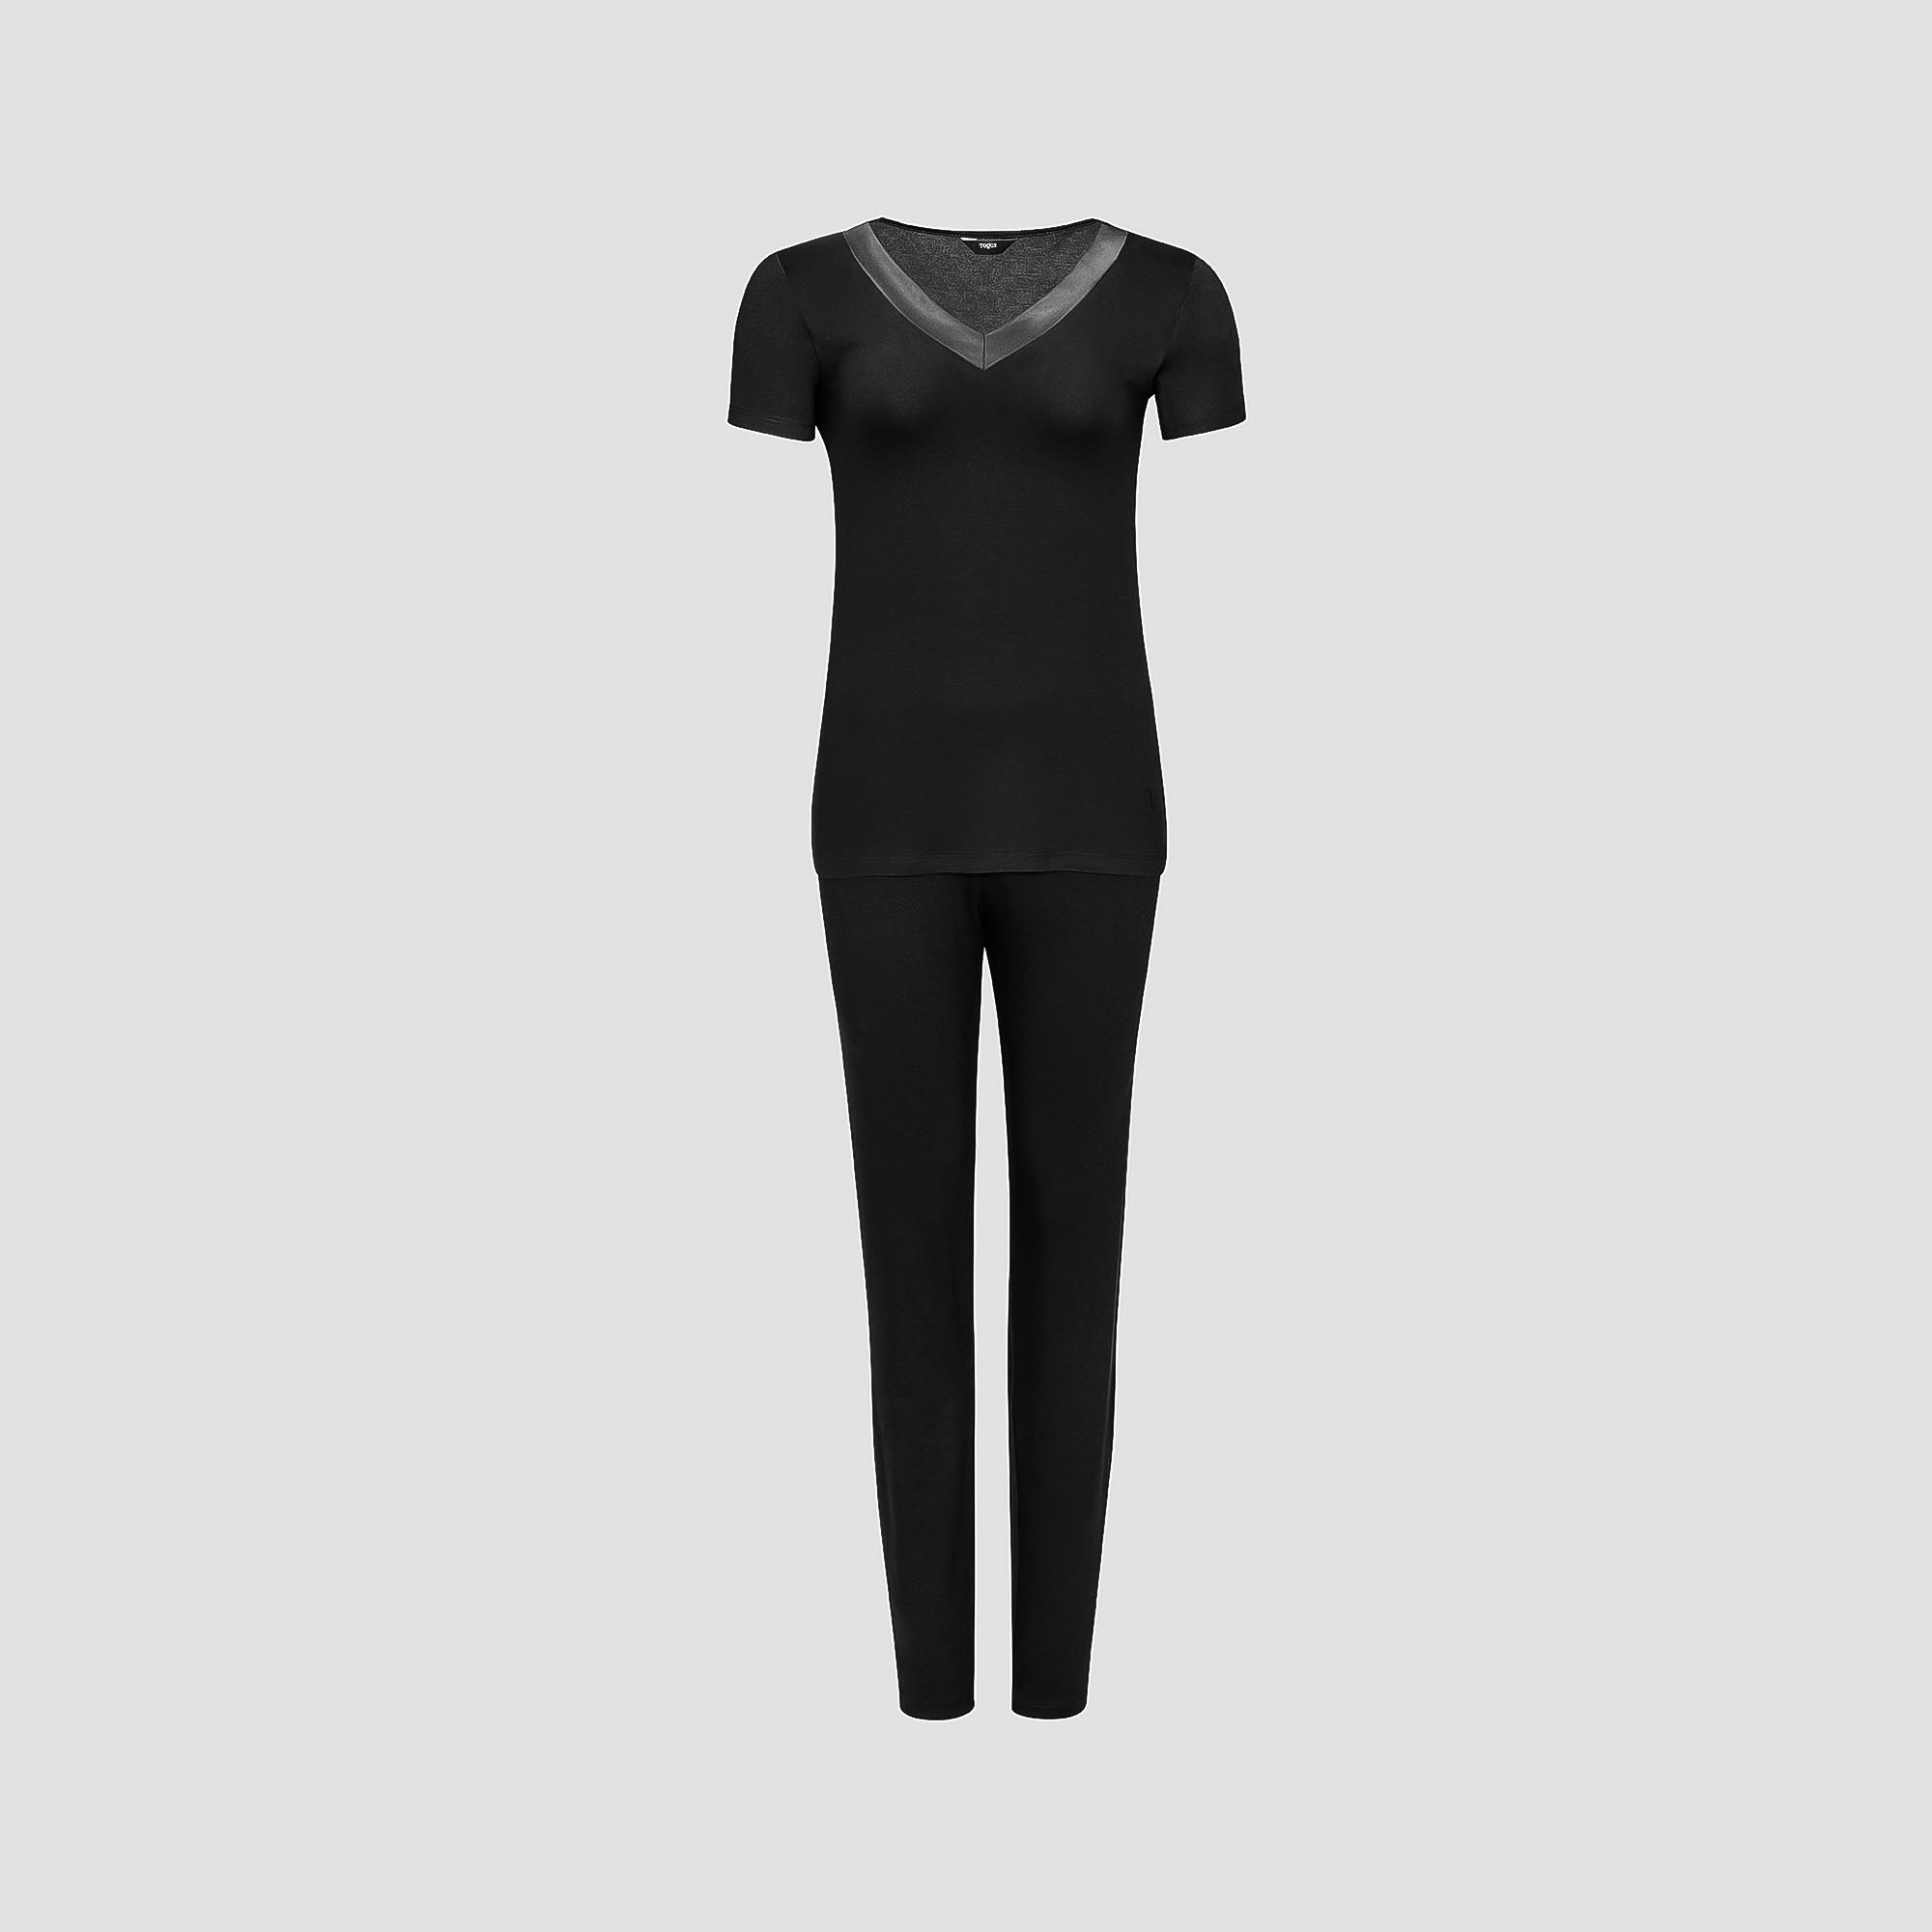 Пижама Togas Ингелла черная женская XL(50) 2 предмета пижама футболка брюки